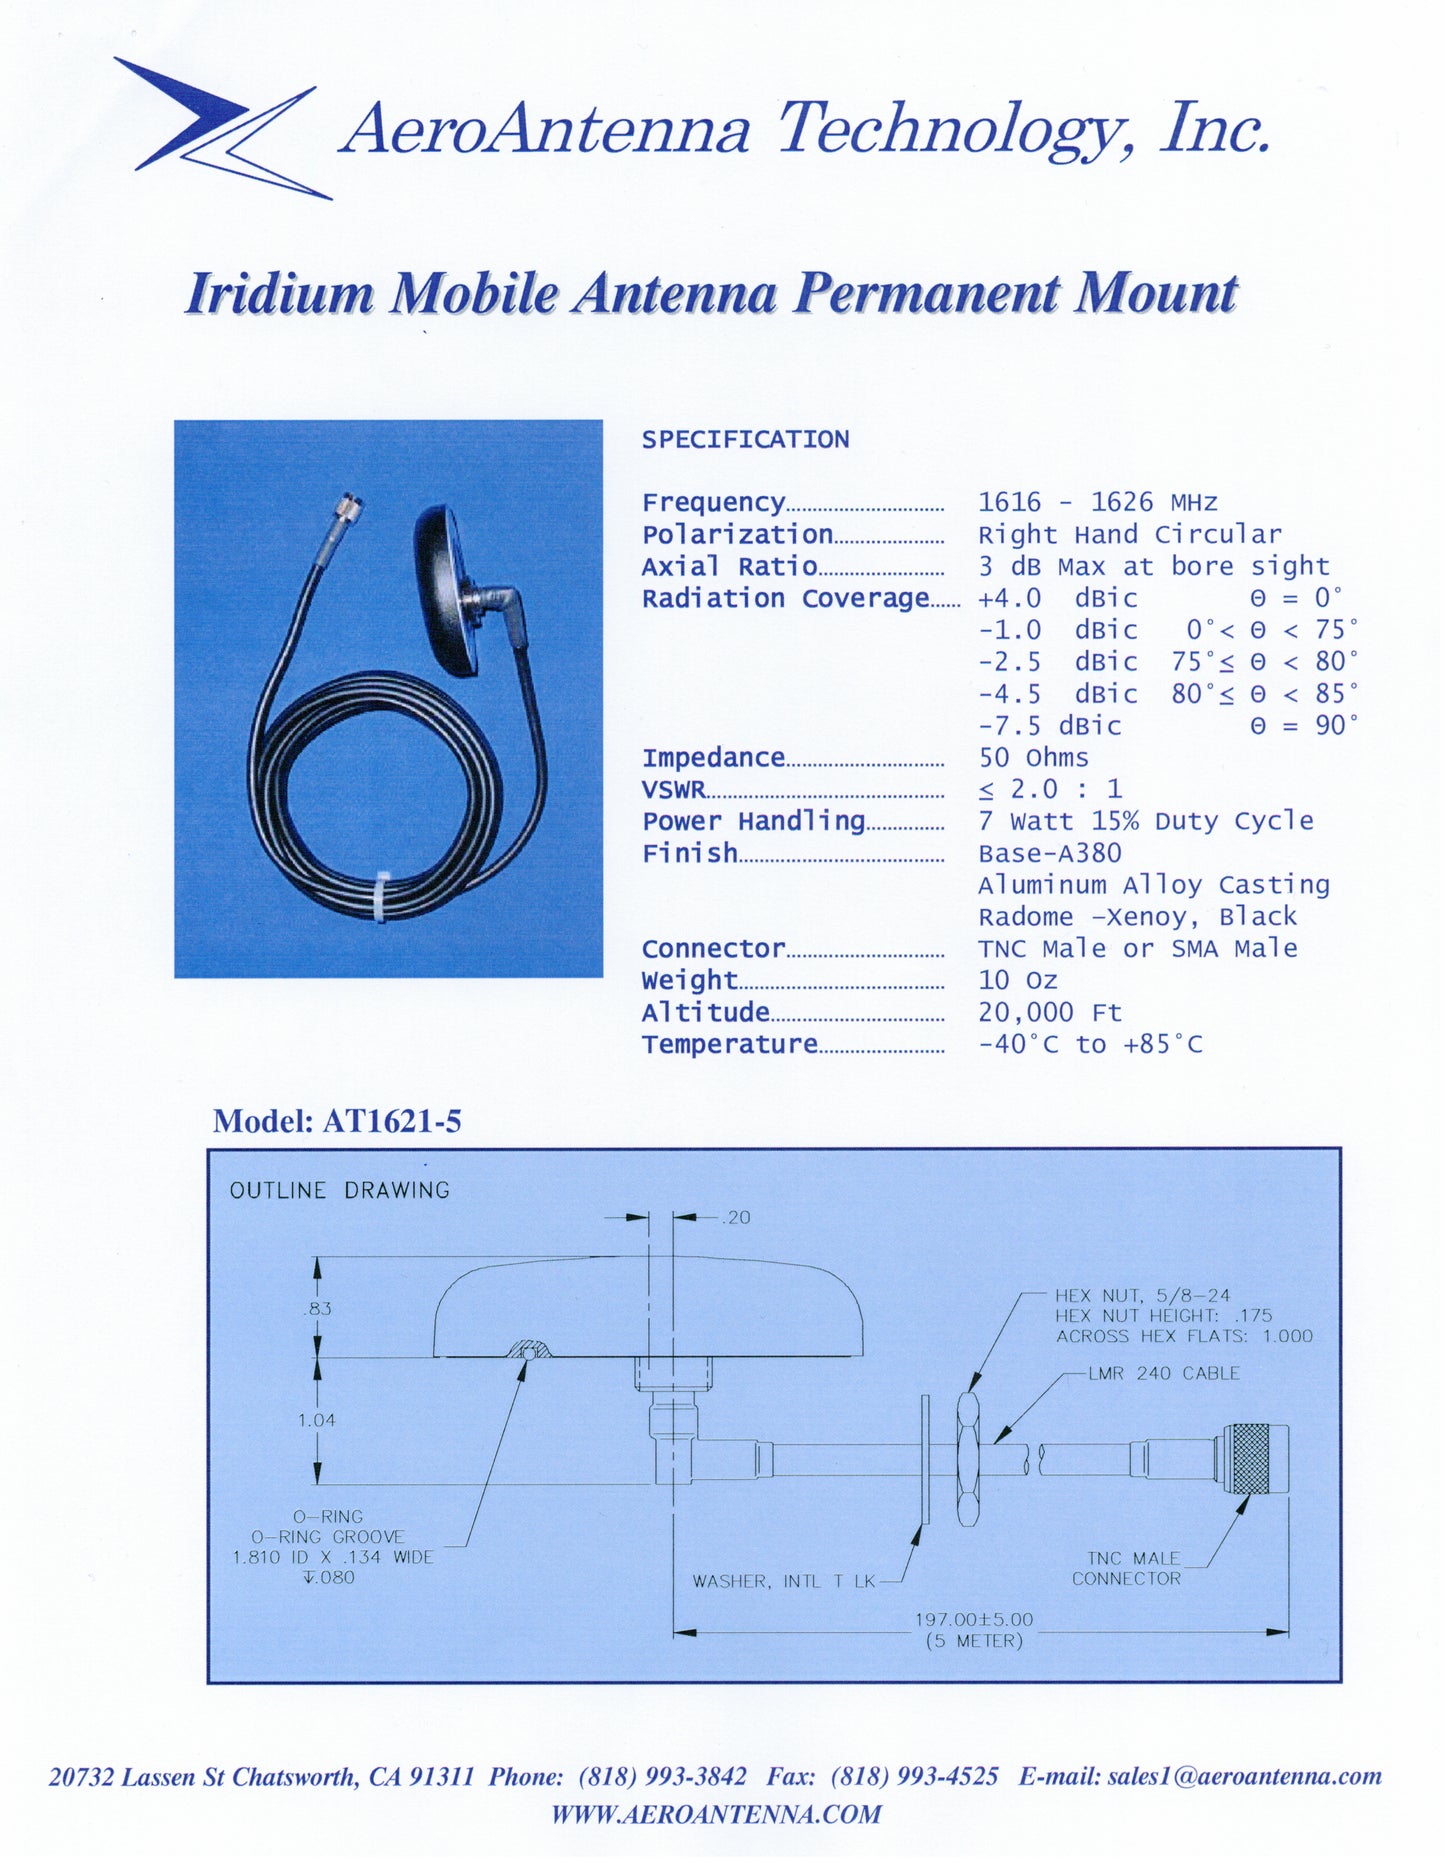 Antena móvil Iridium - Montaje permanente